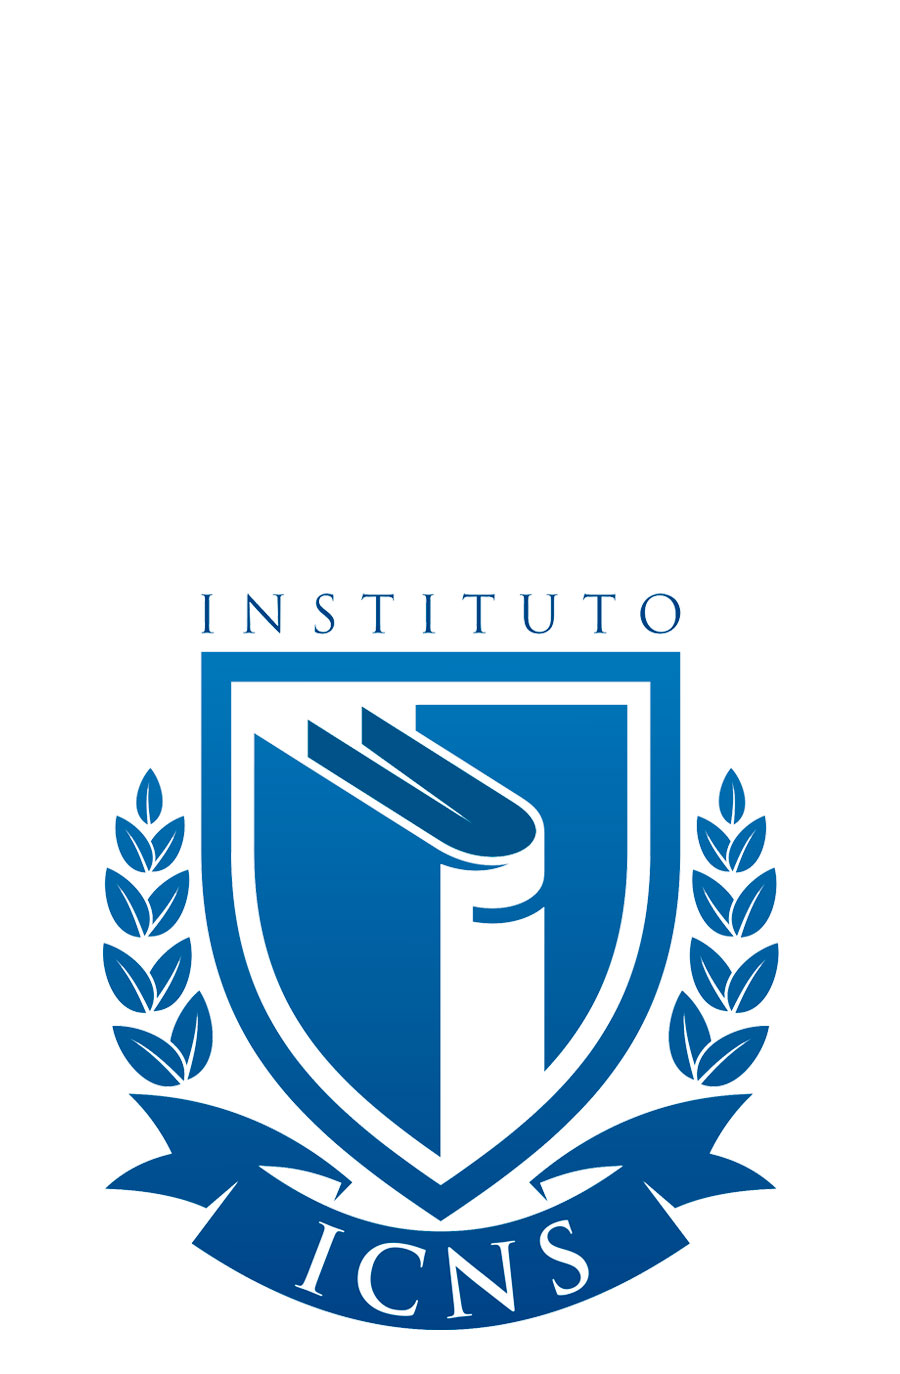 ICNS - Instituto de Ciencias de Nutrición y Salud